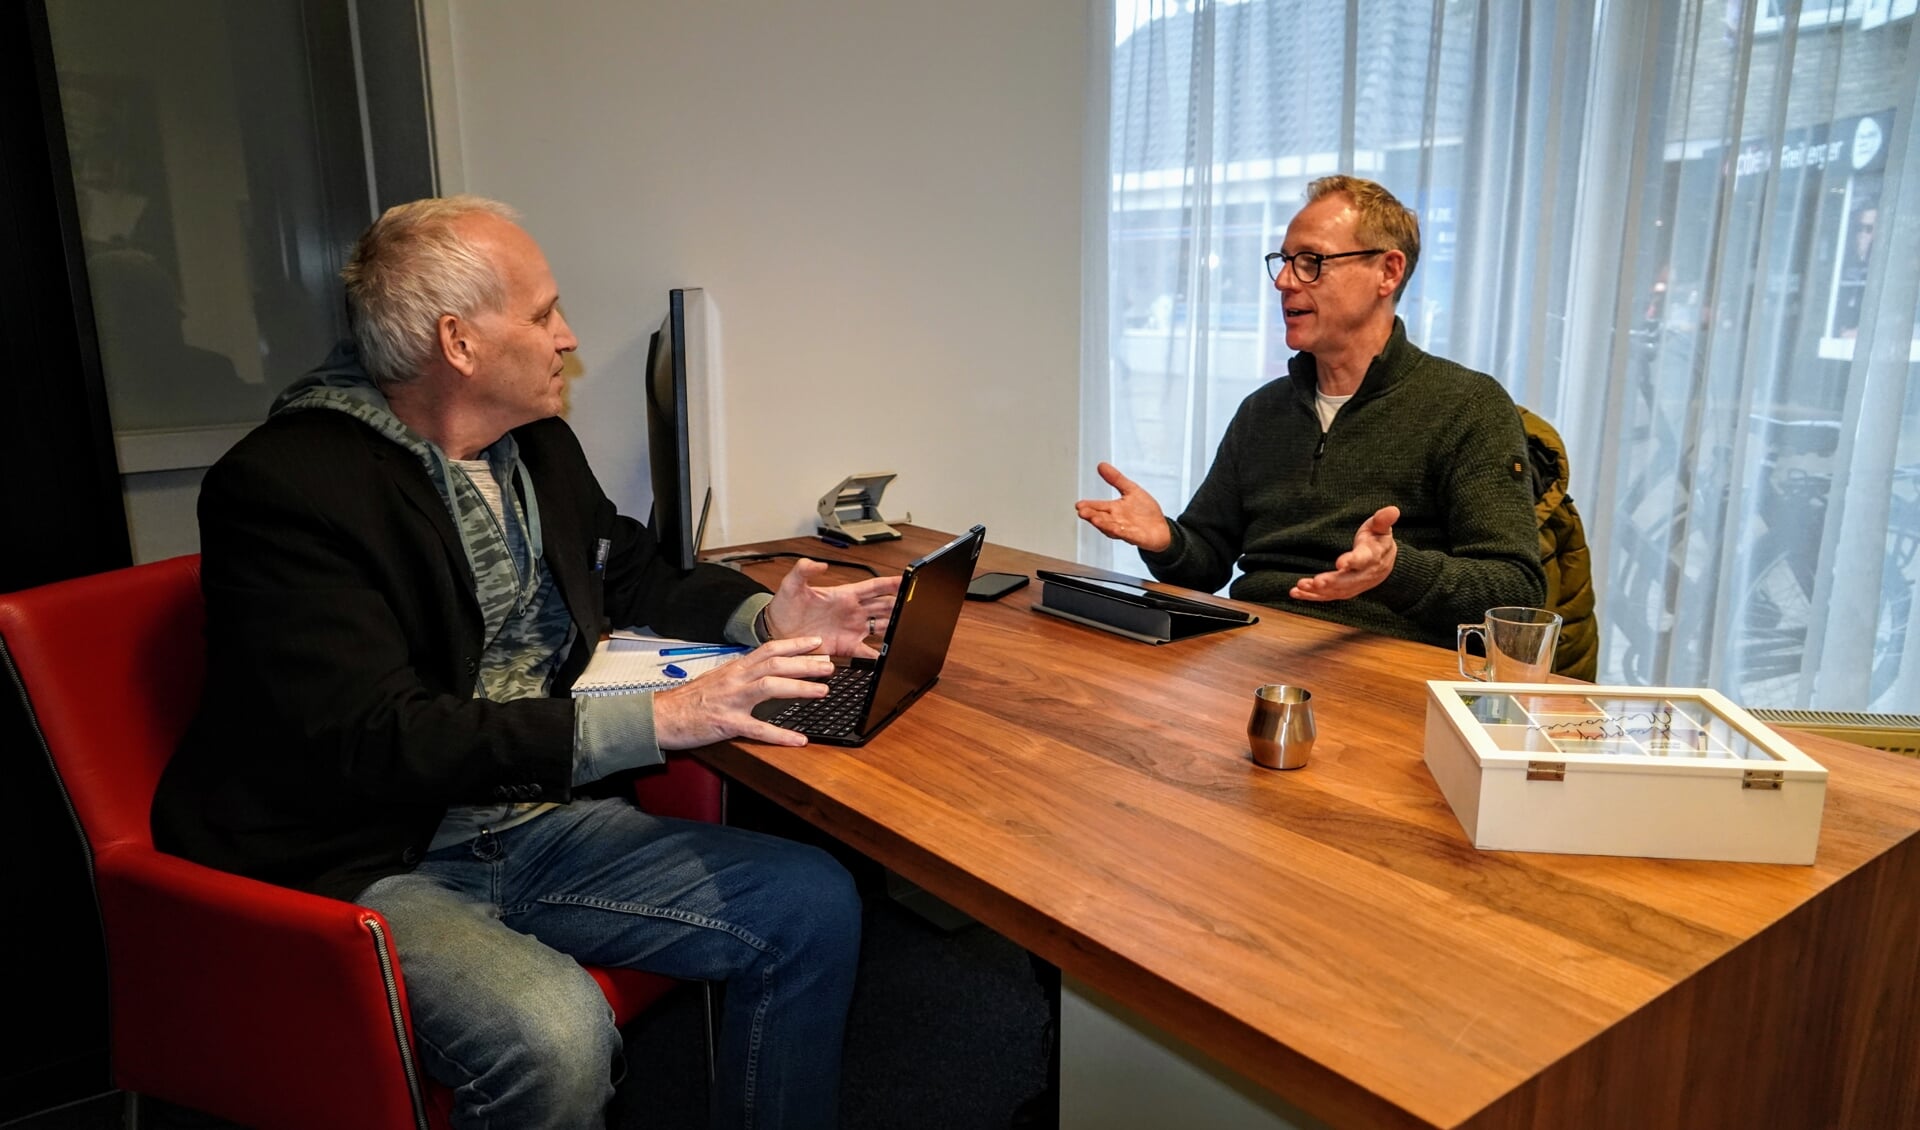 Dirk van der Woude directeur van Integripro (rechts) in gesprek over cybersecurity met Actief redacteur Henk Brinkman.